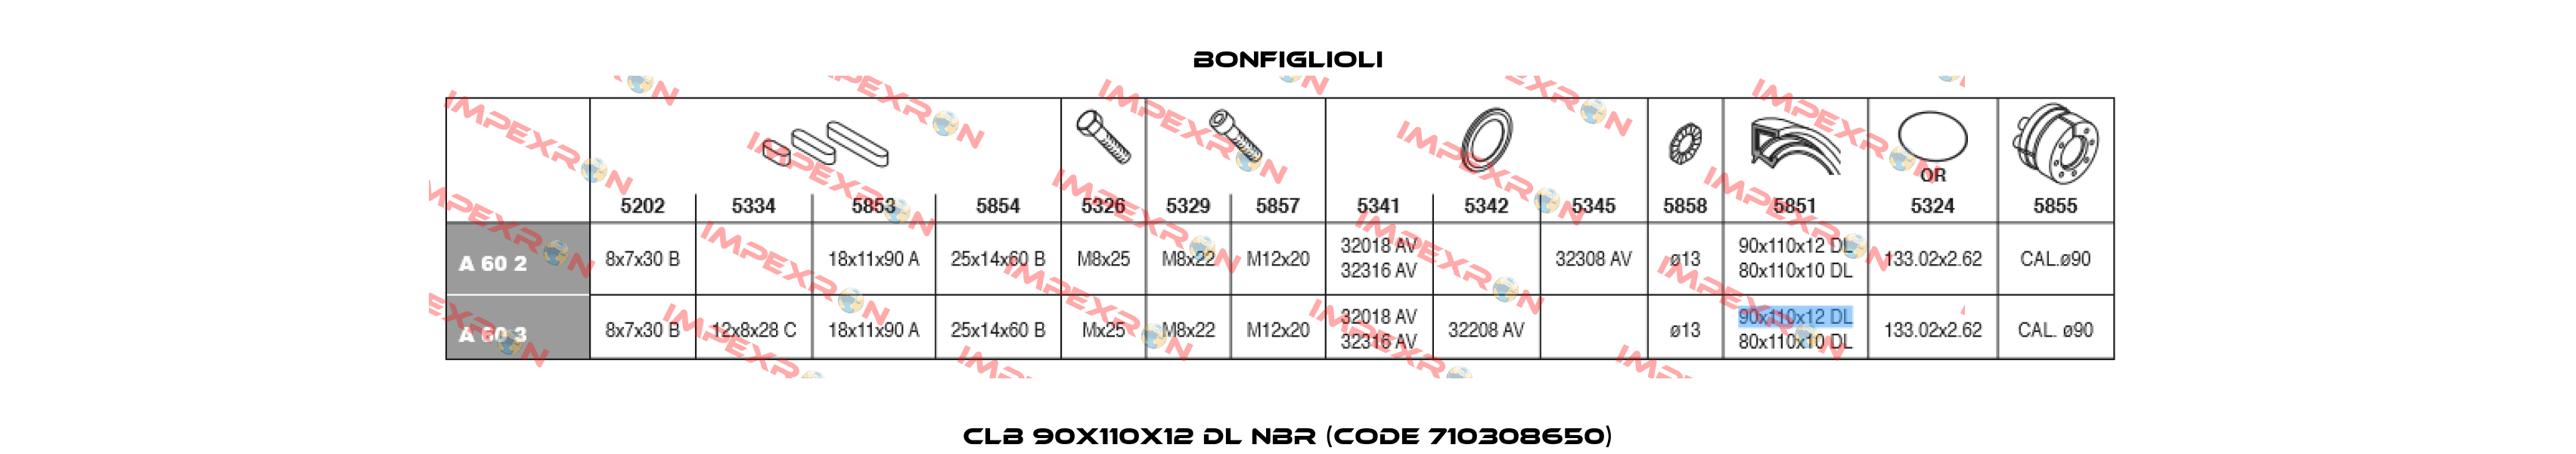 CLB 90X110X12 DL NBR (Code 710308650) Bonfiglioli